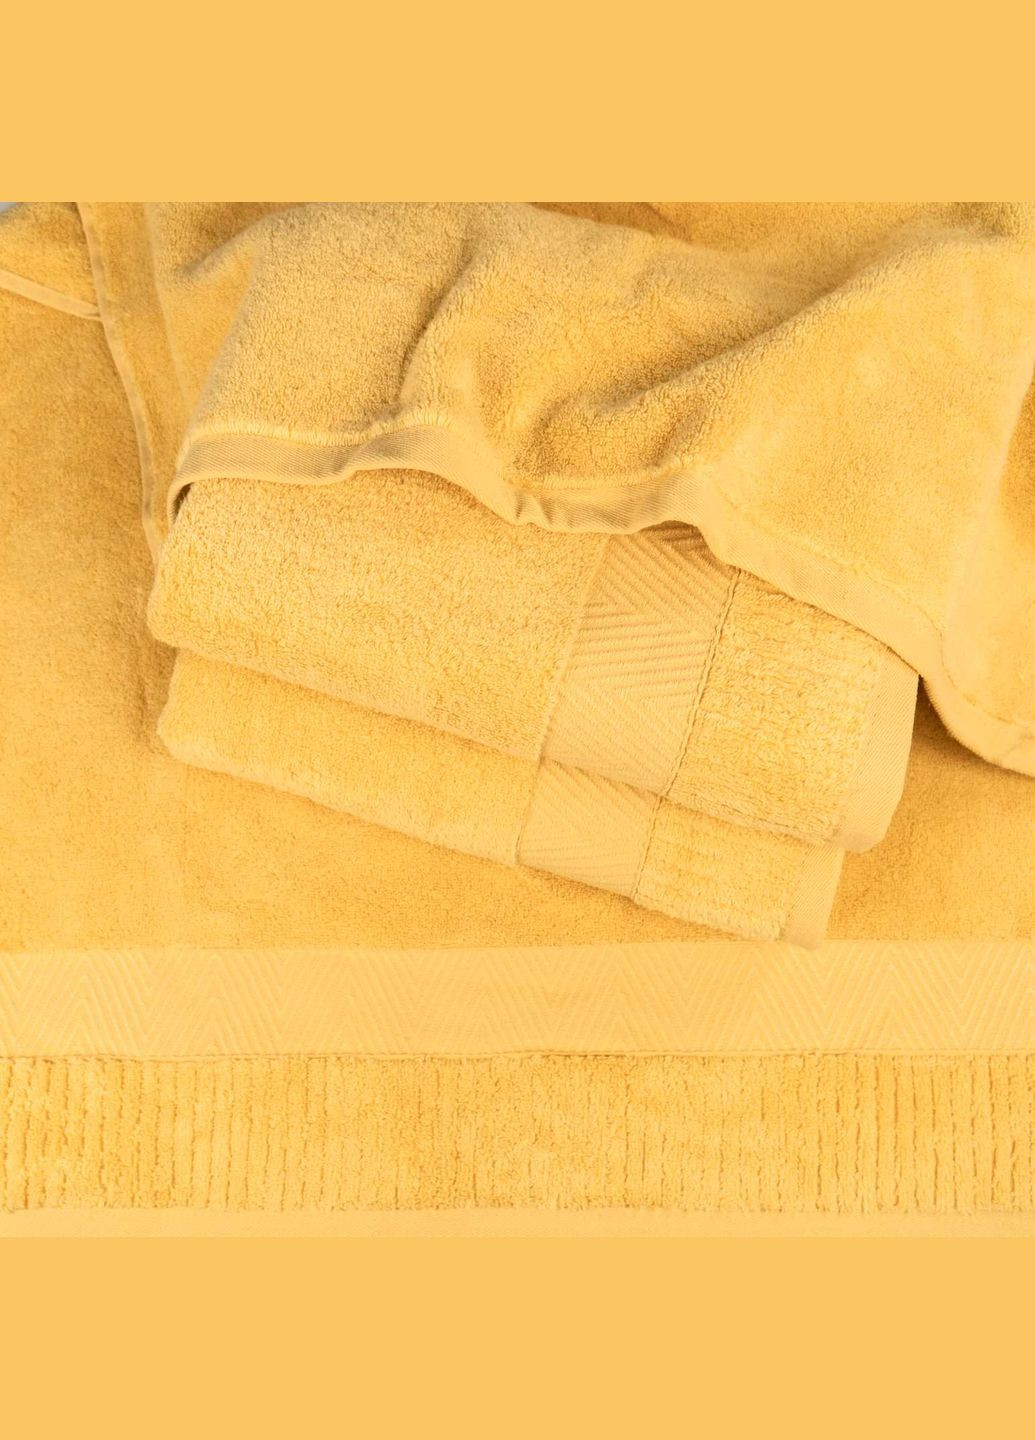 GM Textile комплект махрових рушників зеро твіст бордюр 3шт 40x70см, 50x90см, 70x140см 550г/м2 (жовтий) жовтий виробництво -